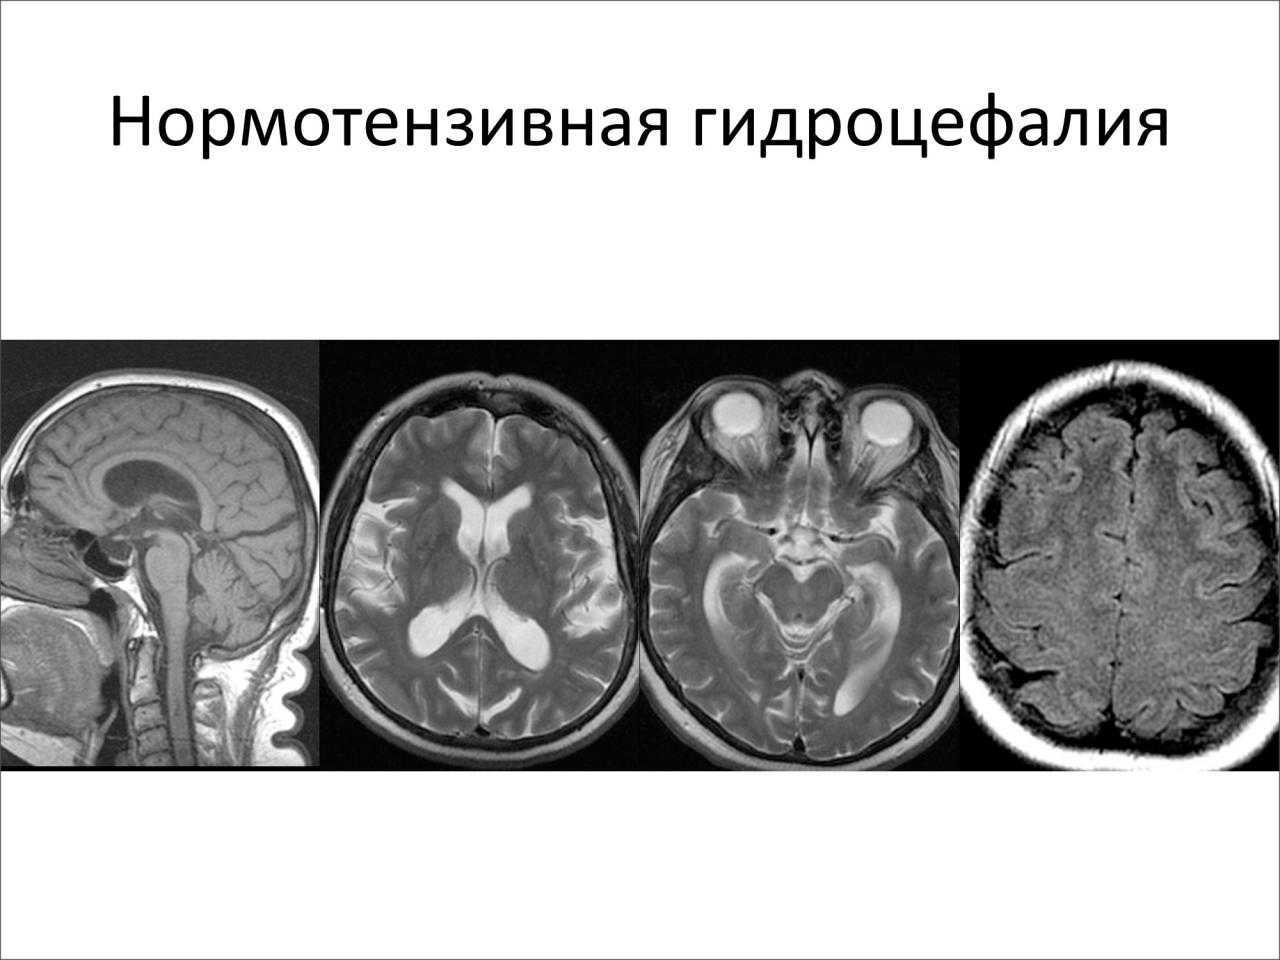 Выражено умеренно гидроцефалия мозга. Клинические симптомы гидроцефалии. Нормотензивная гидроцефалия мрт. Наружная гидроцефалия головного мозга кт. Компьютерная томография головного мозга гидроцефалия.